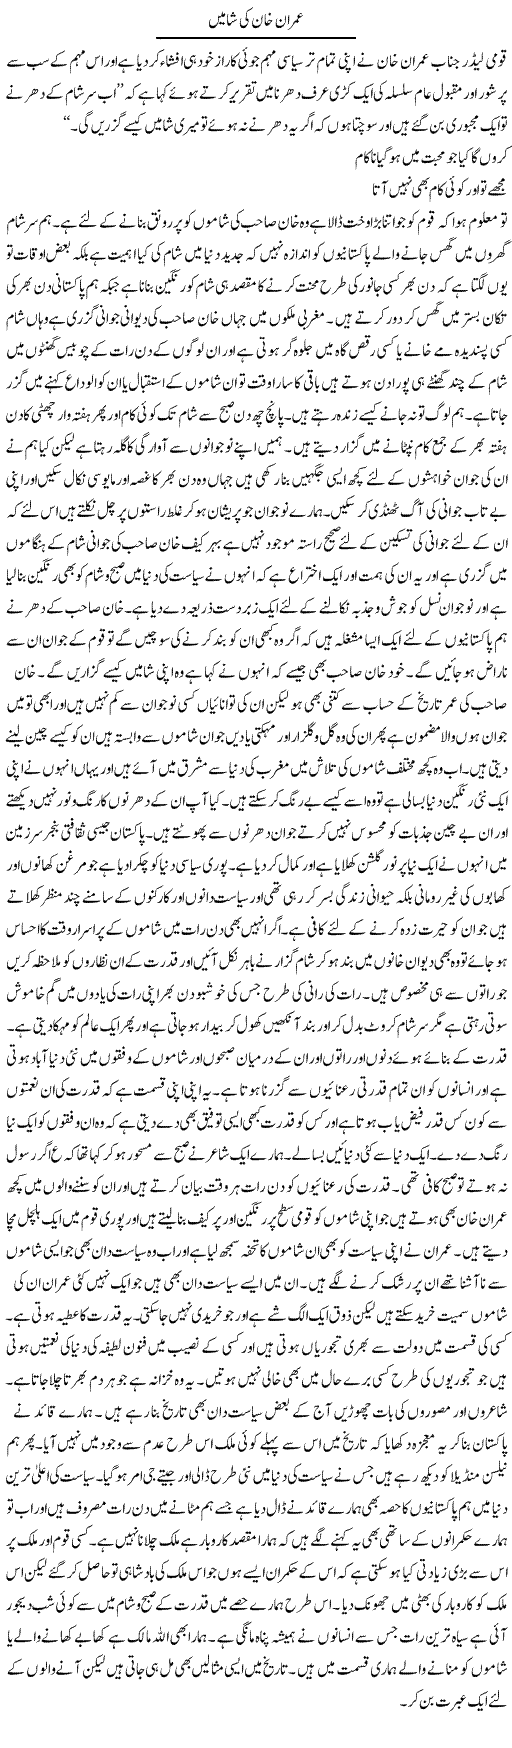 Imran Khan Ki Shamain | Abdul Qadir Hassan | Daily Urdu Columns